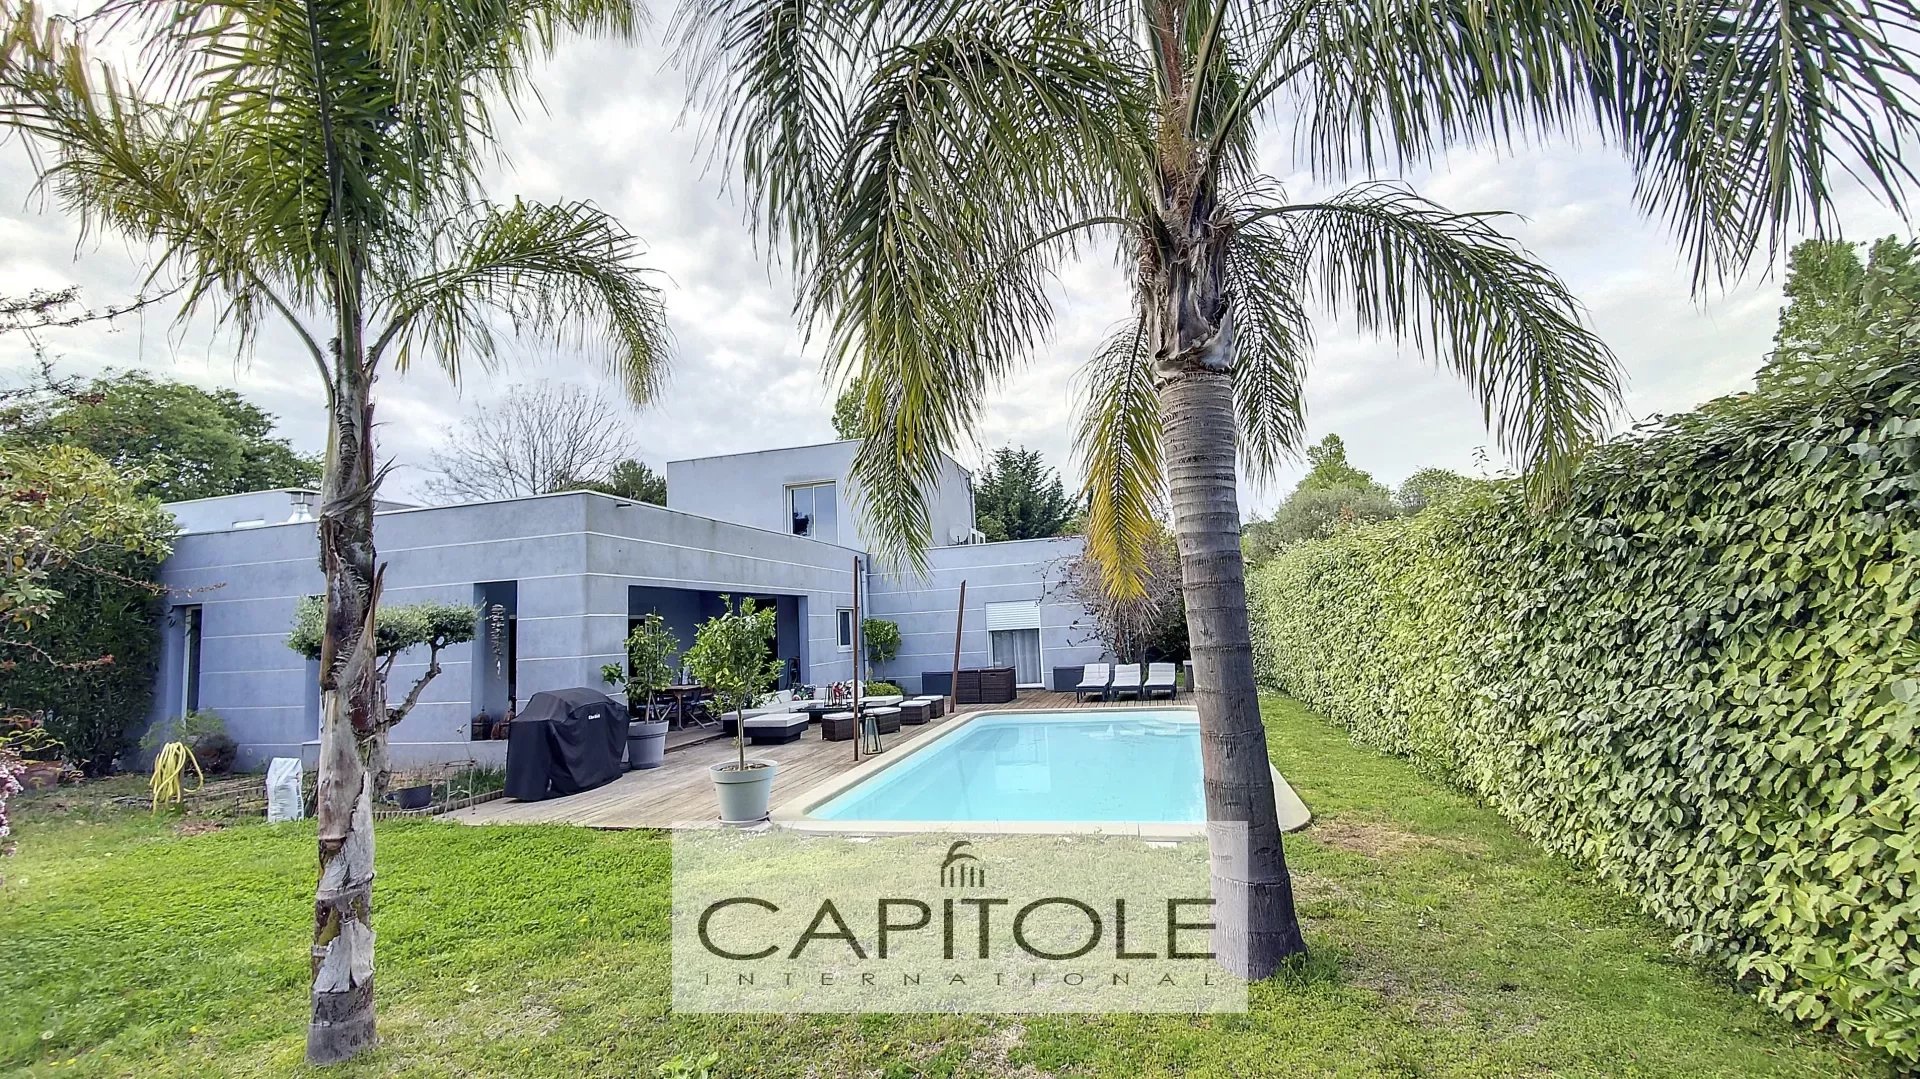 ANTIBES - A vendre - Villa contemporaine avec piscine,  proche plages, au calme